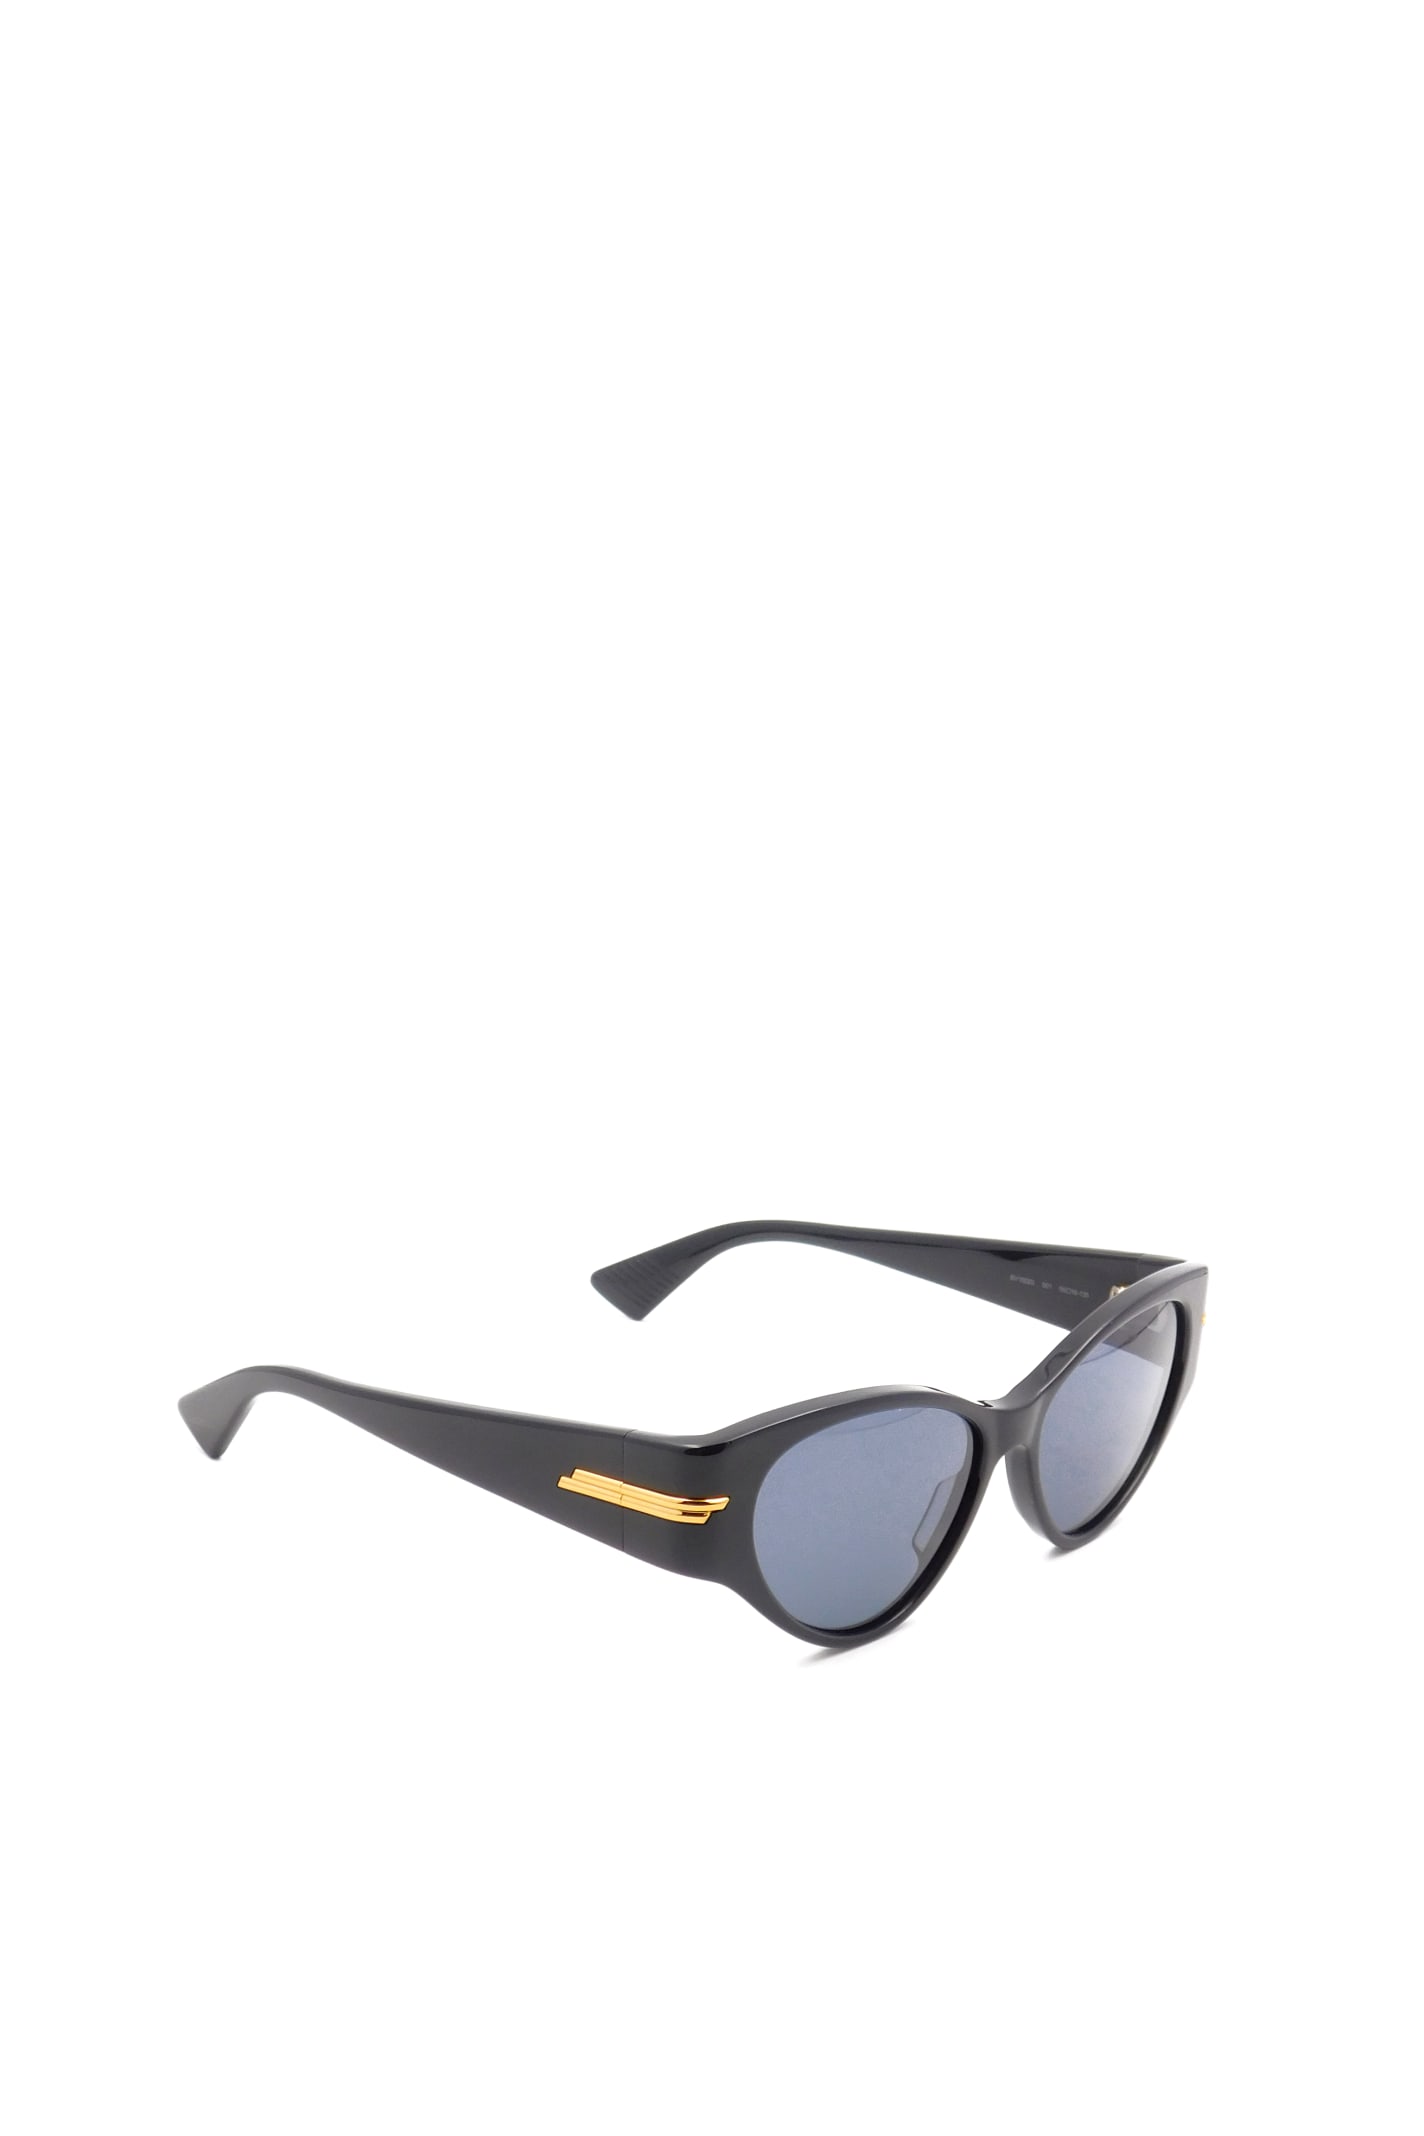 Bottega Veneta Eyewear BV1002S Sunglasses